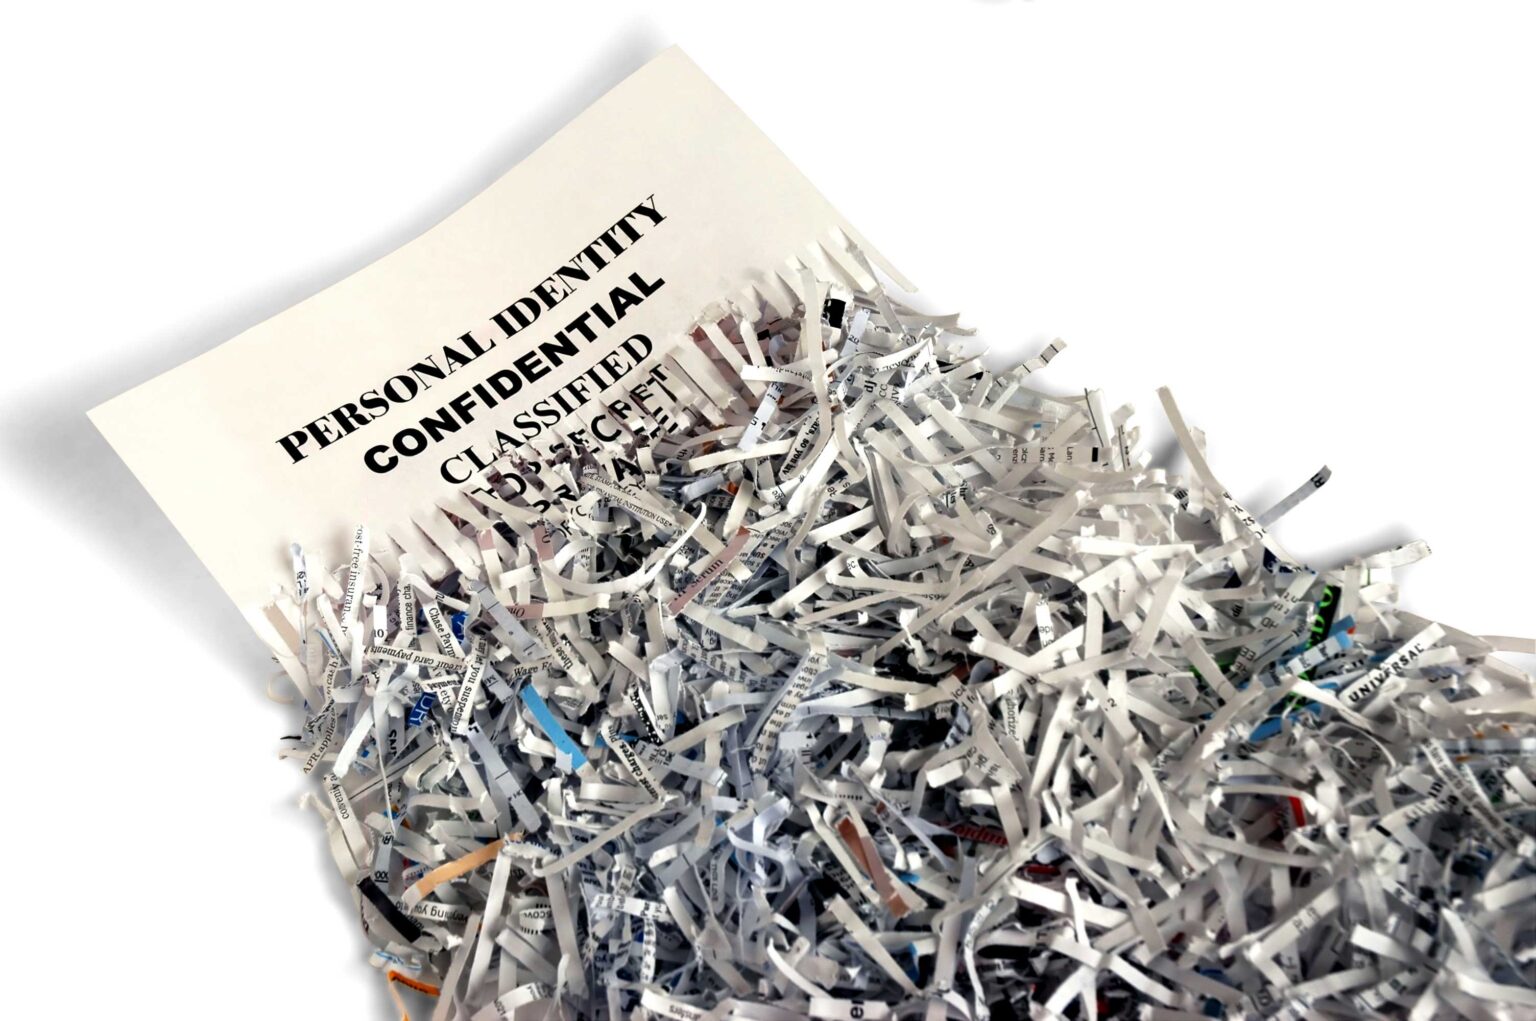 document shredding near me